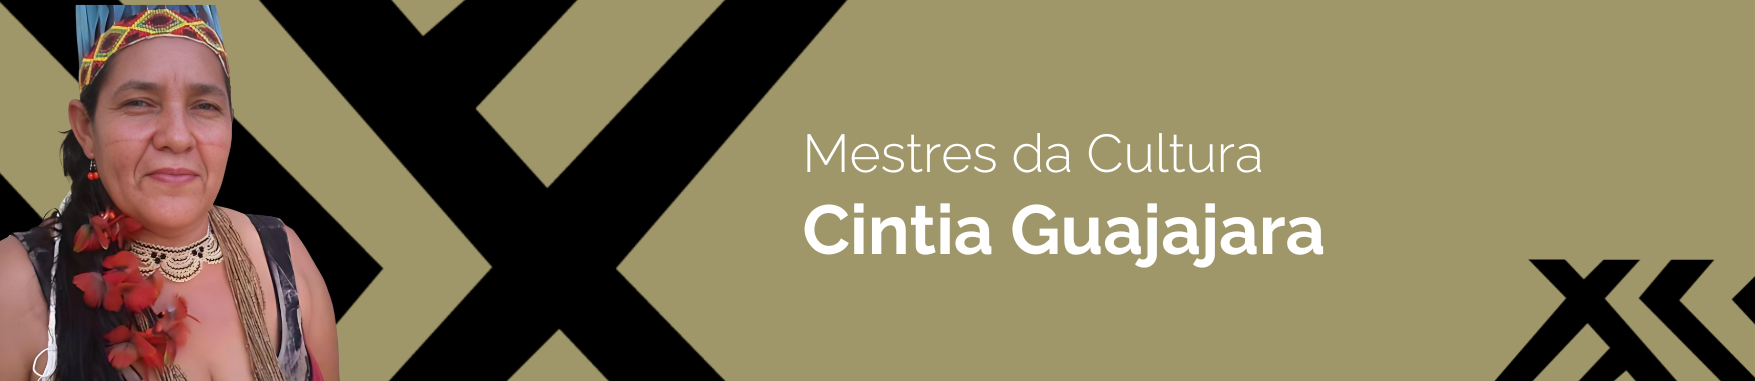 Banner com a imagem da Cintia Guajajara